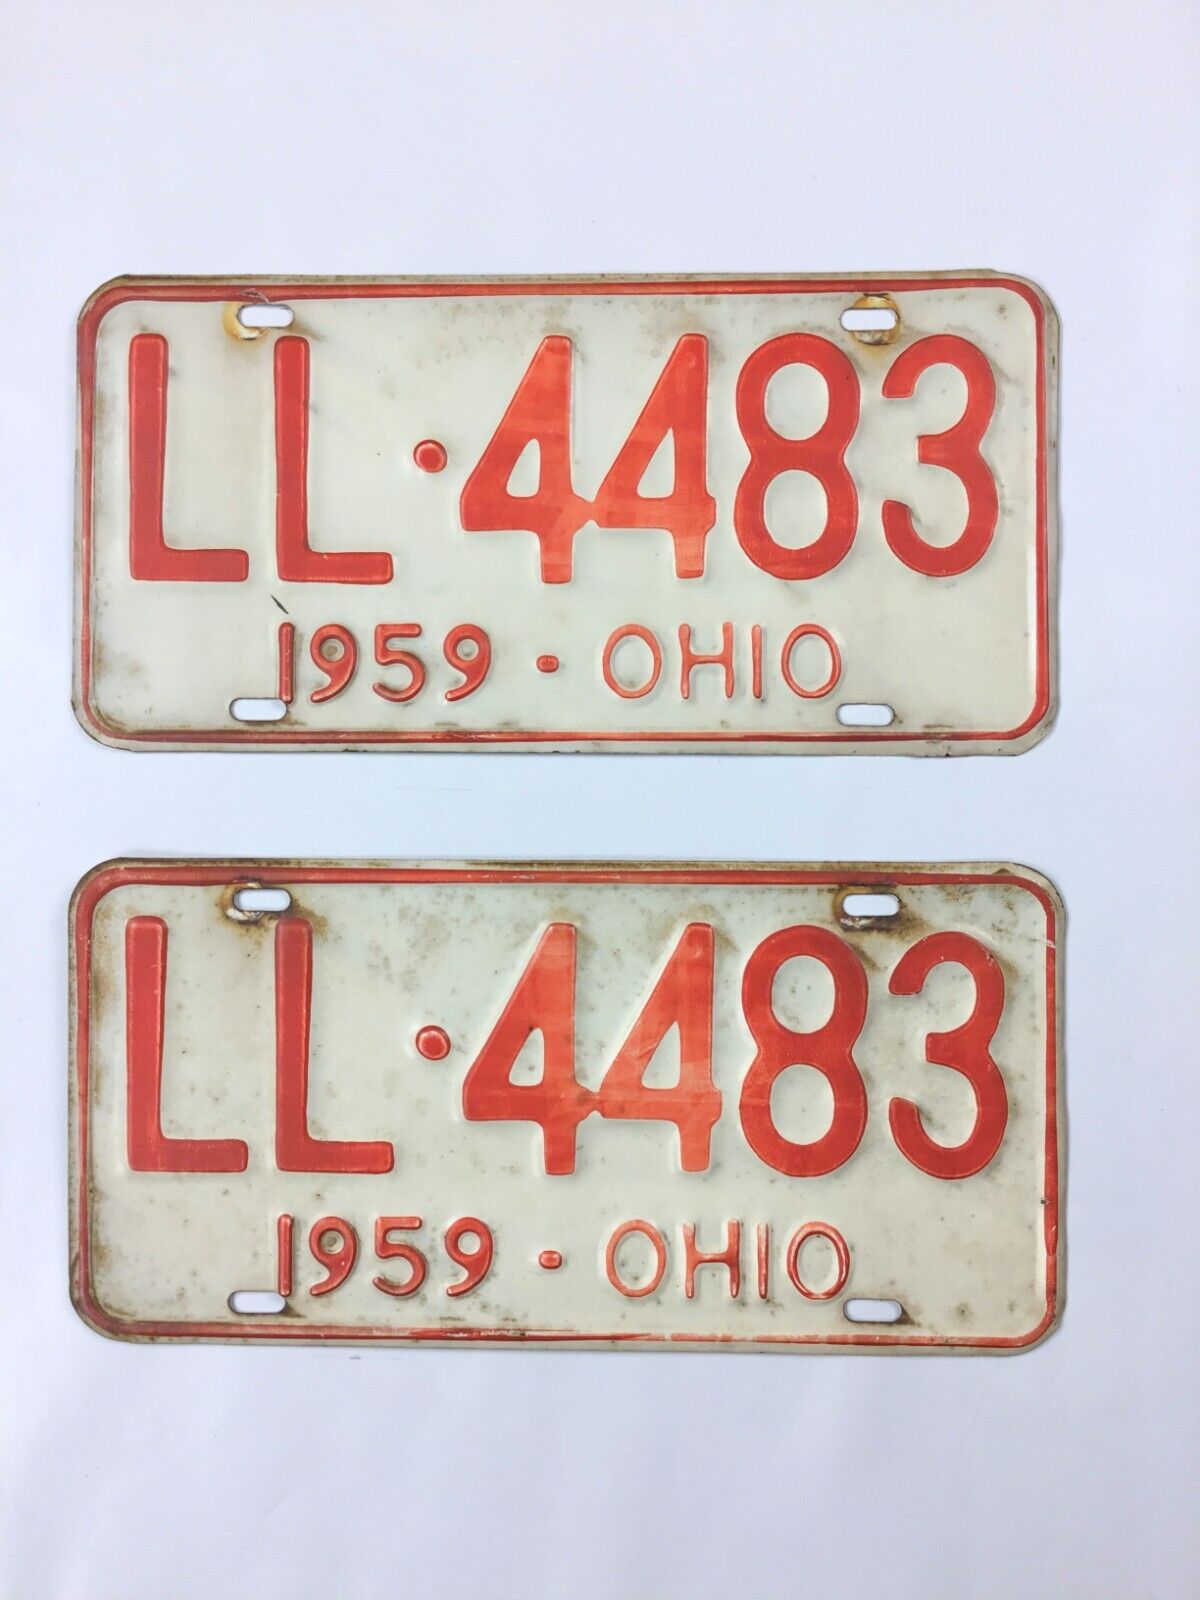 1959 Ohio license plate pair - Original